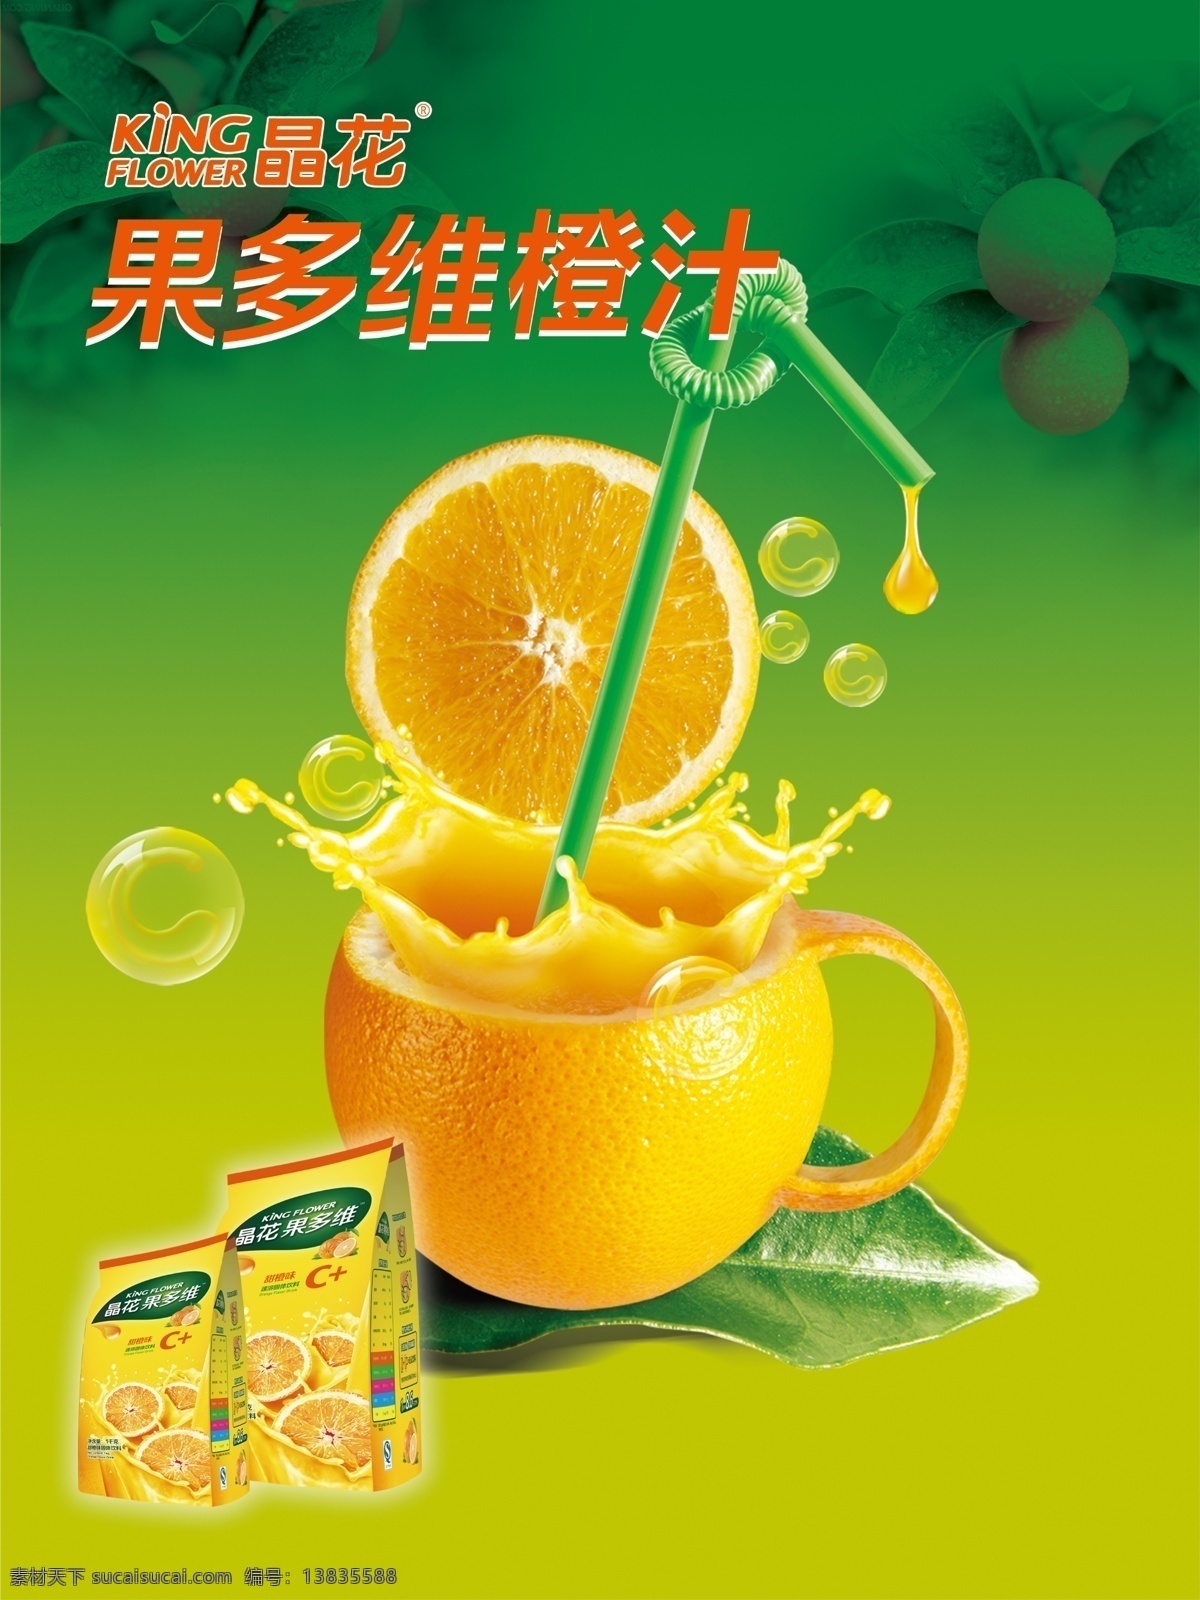 橙汁海报 橙汁 橙汁创艺海报 logo 晶花 橙汁水果图片 广告设计模板 源文件